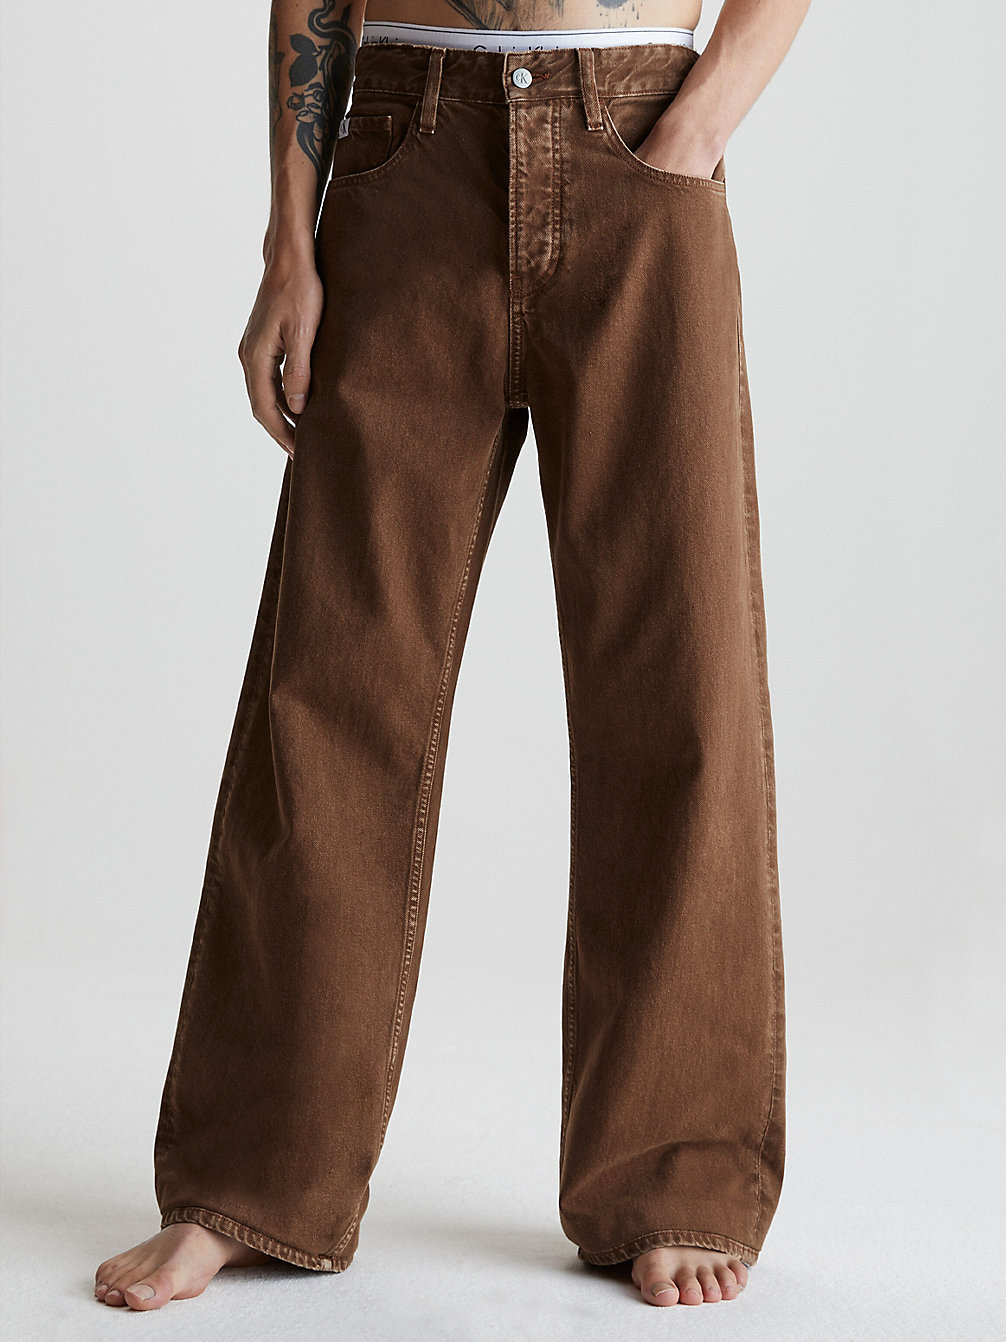 BISON 90's Loose Jeans undefined men Calvin Klein